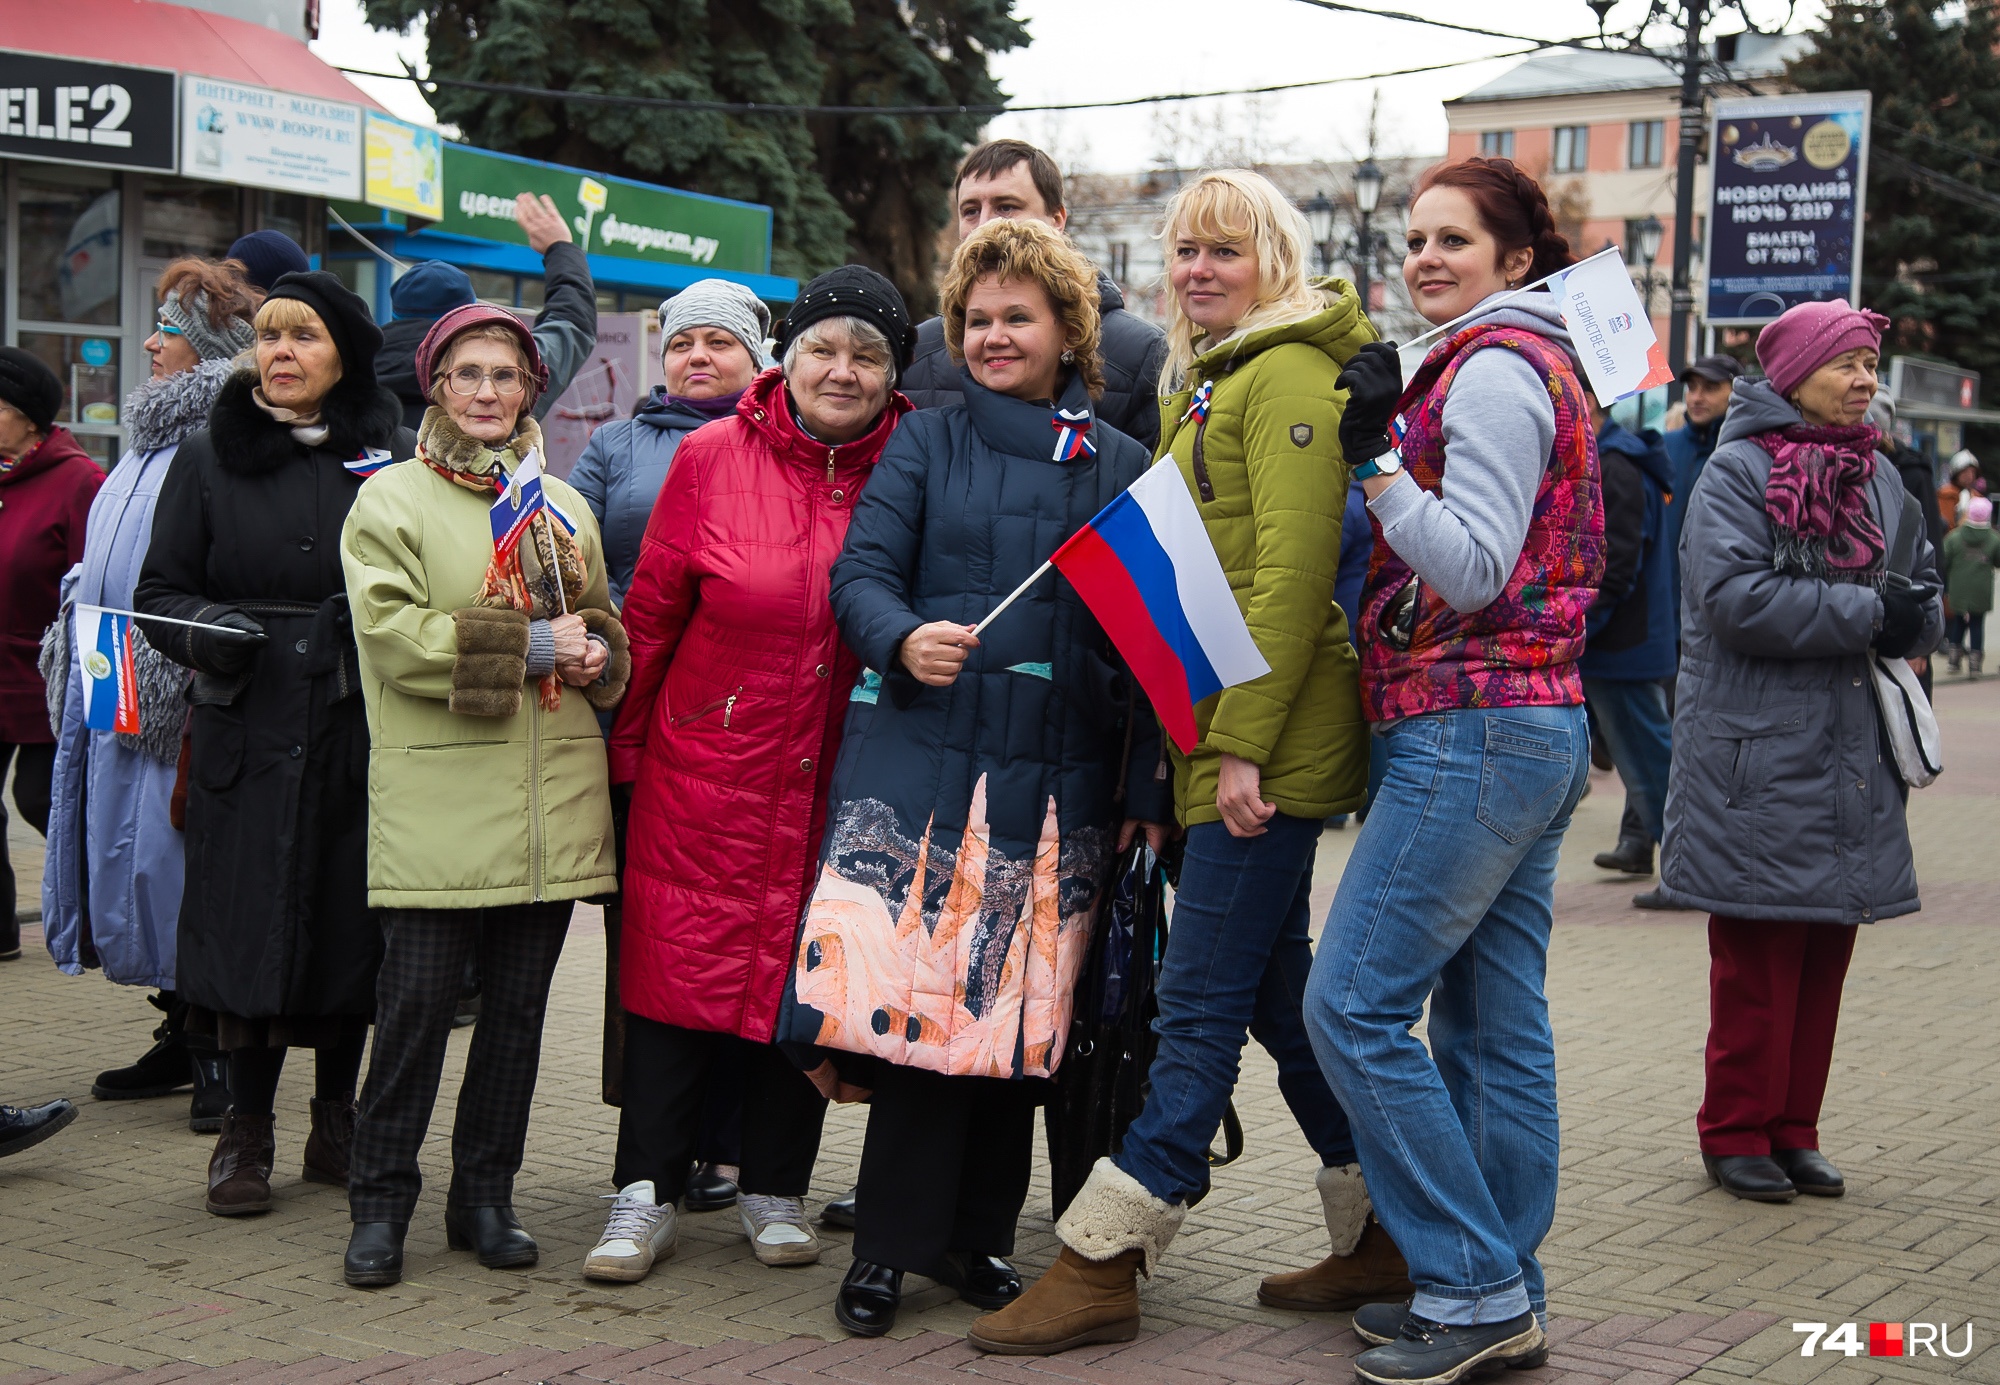 На празднике было очень много российских флагов, что вполне объяснимо